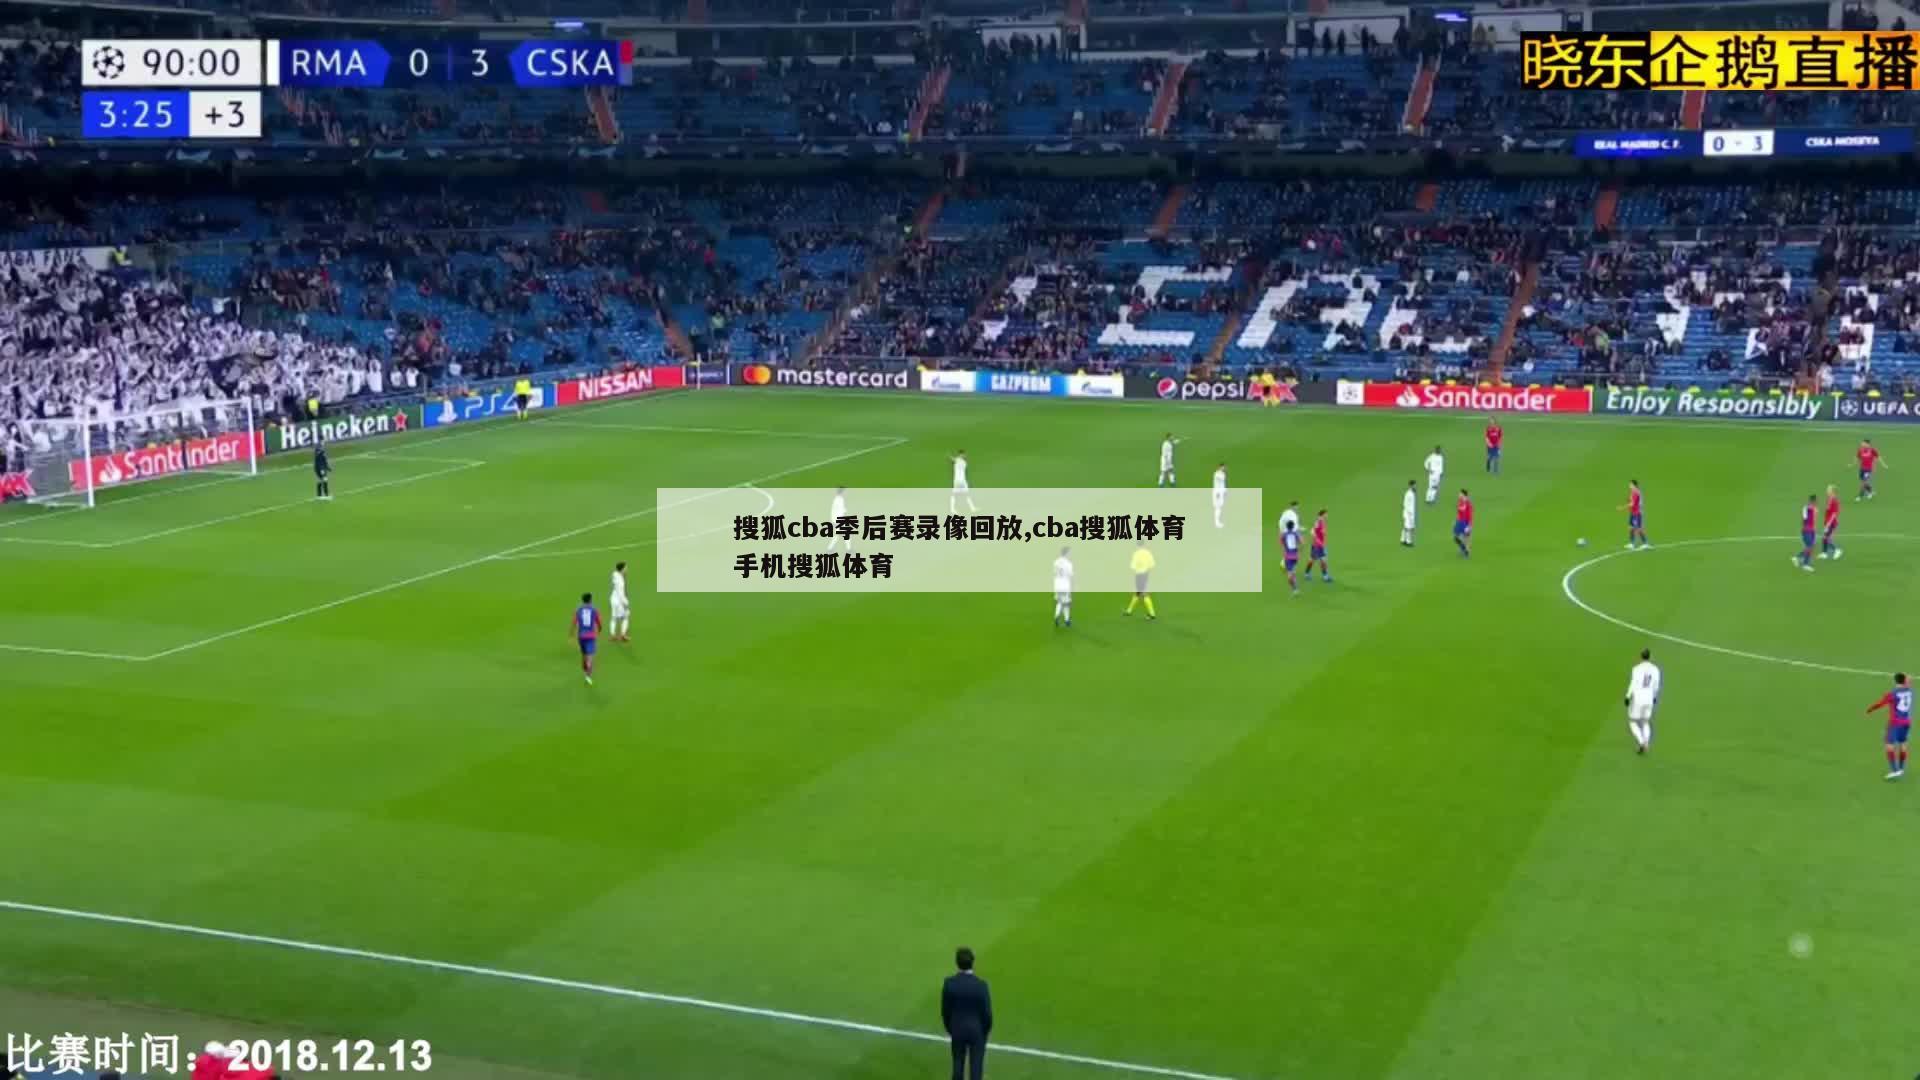 搜狐cba季后赛录像回放,cba搜狐体育手机搜狐体育